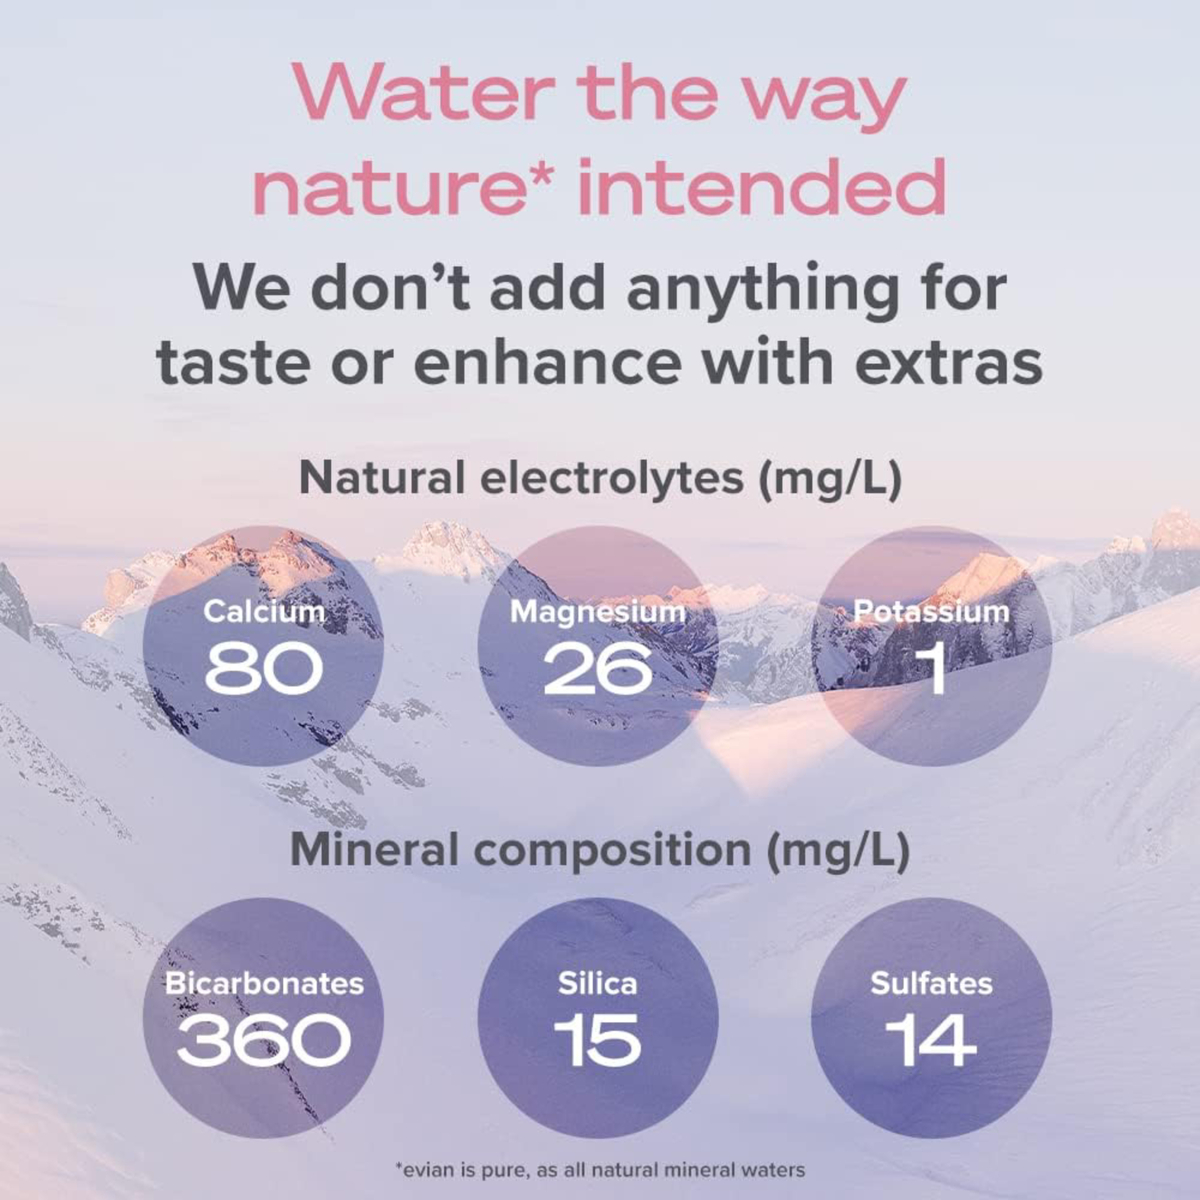 إيفيان مياه معدنية طبيعية 1.5 لتر